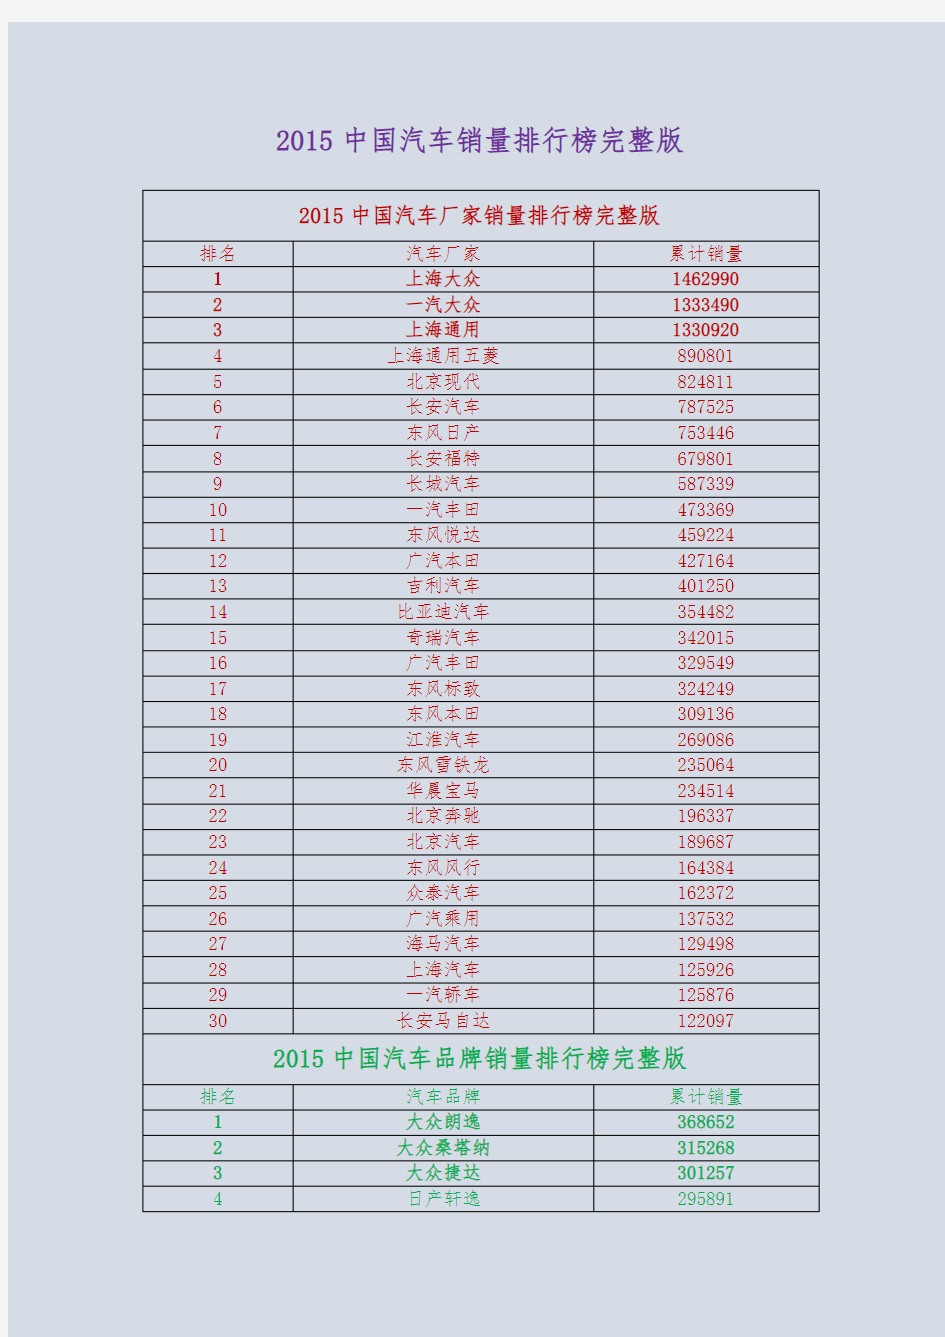 2015中国汽车销量排行榜完整版